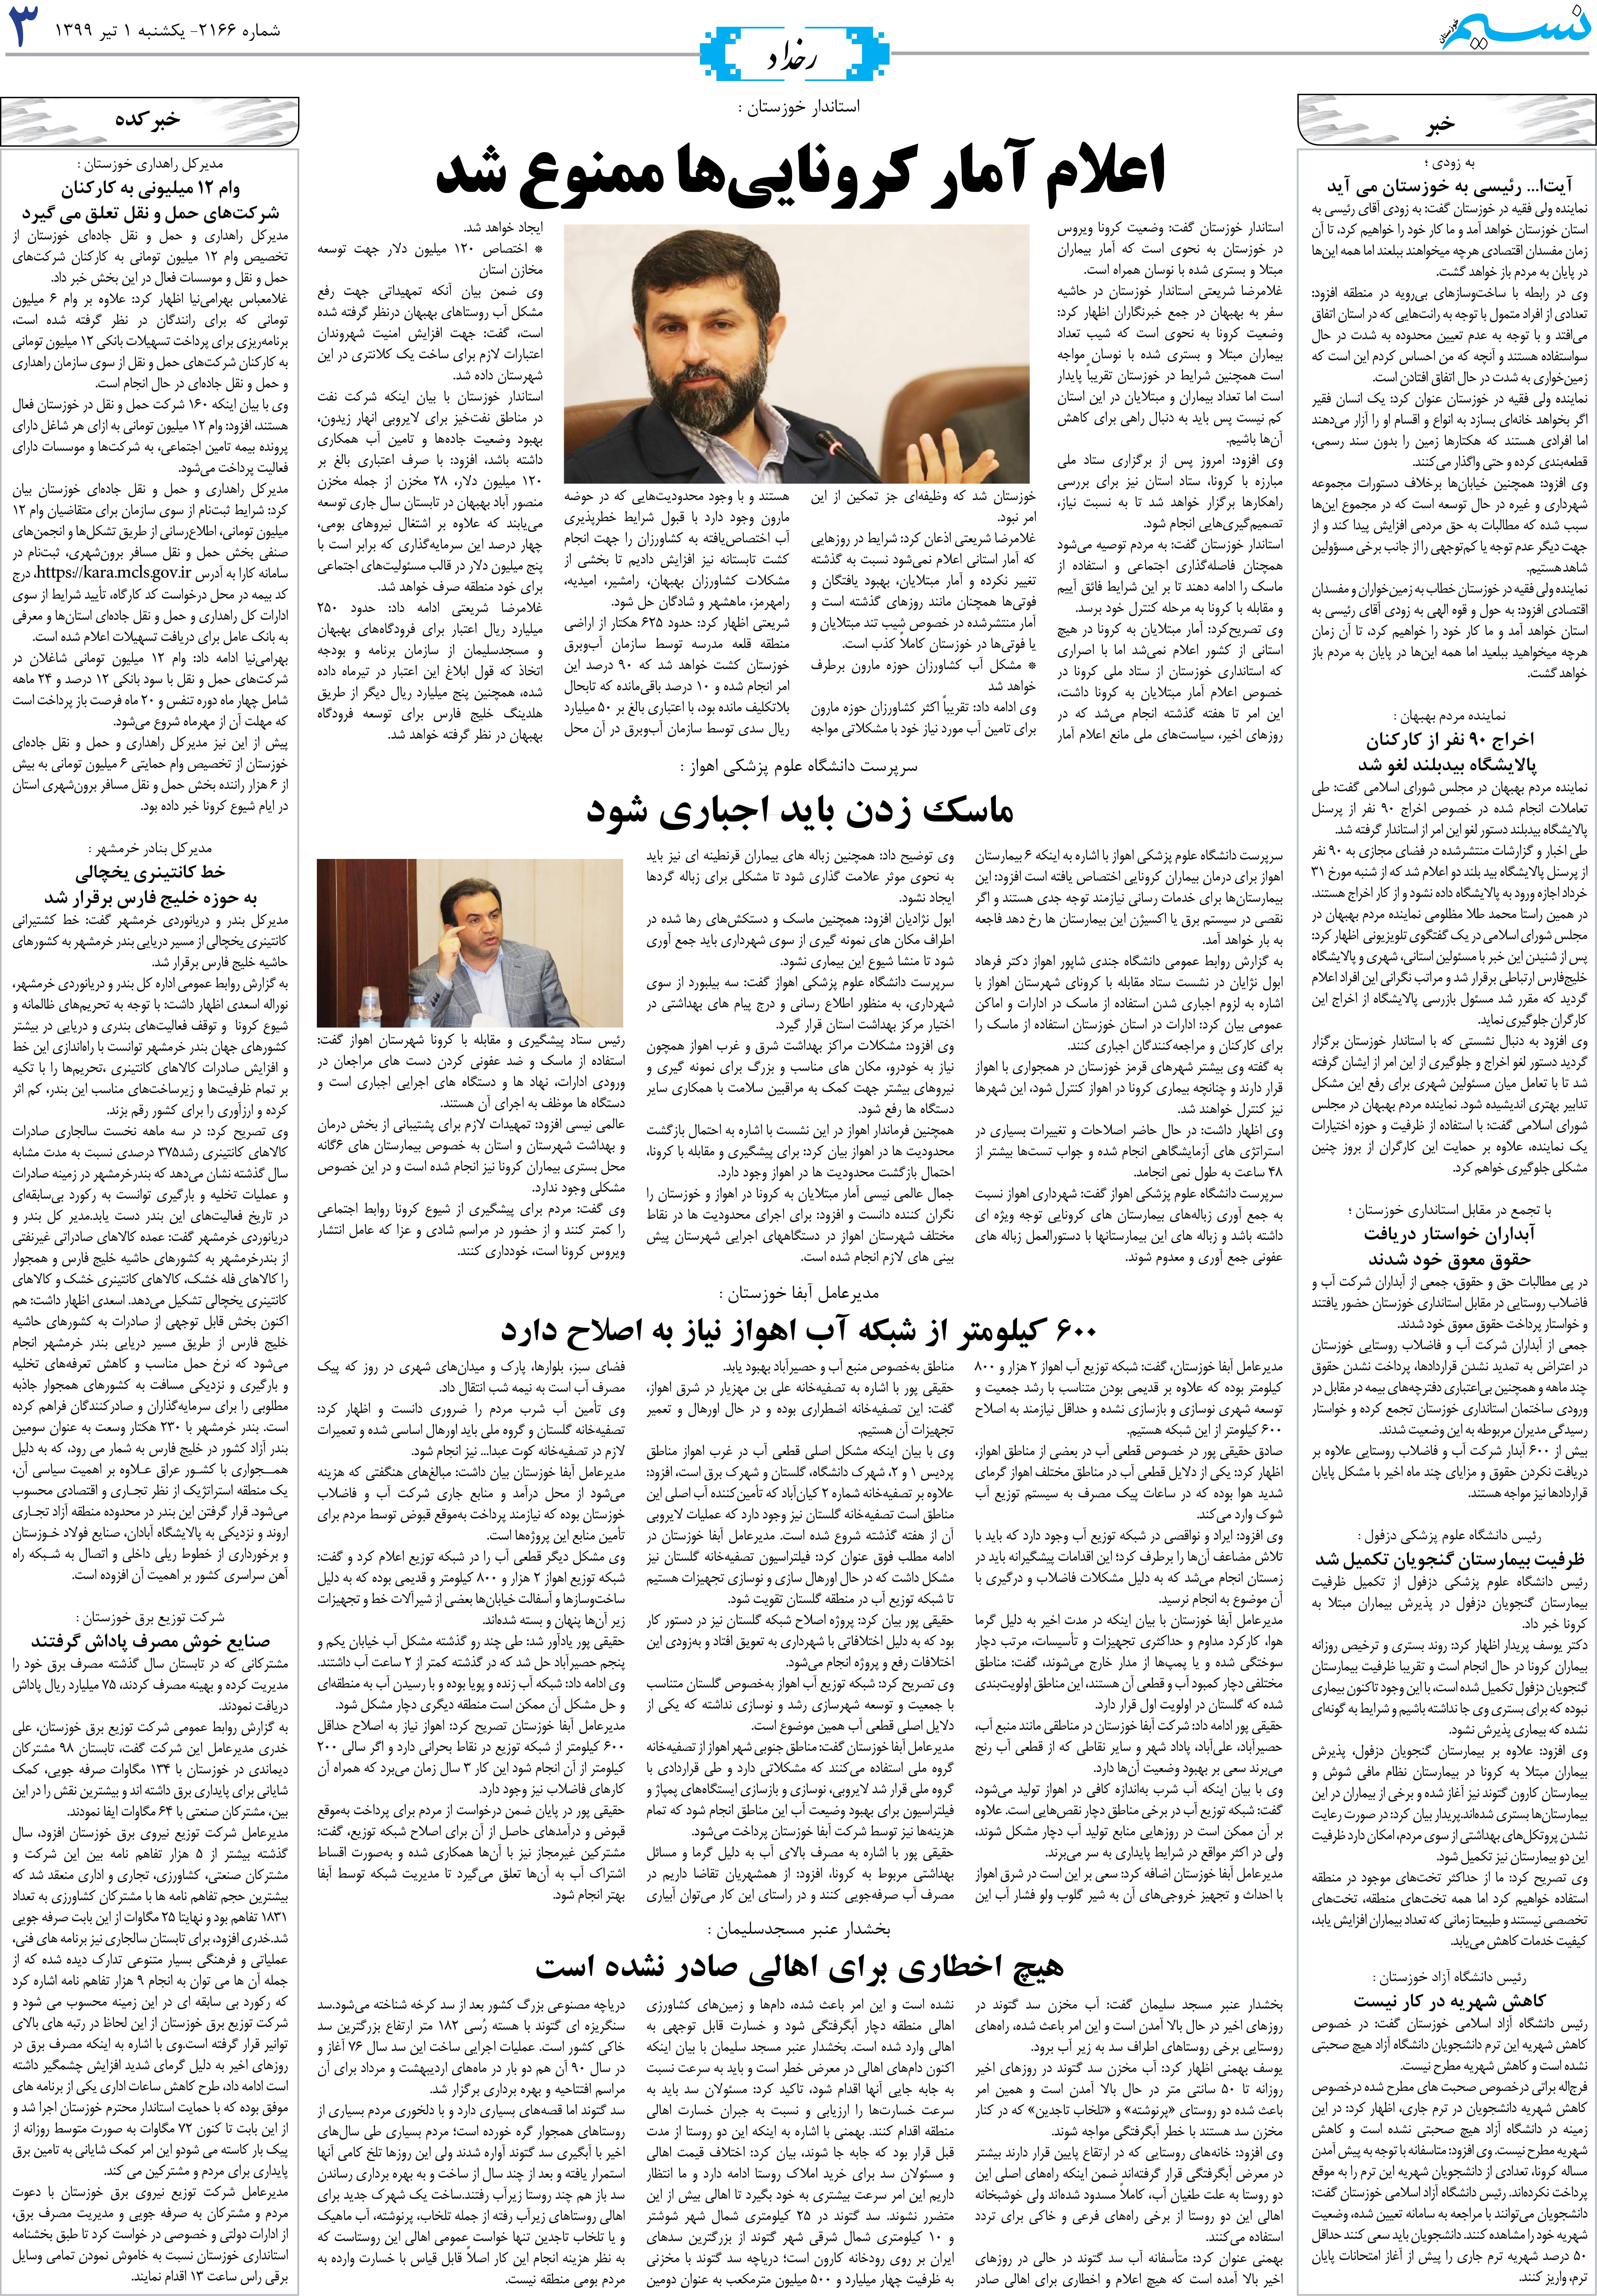 صفحه رخداد روزنامه نسیم شماره 2166